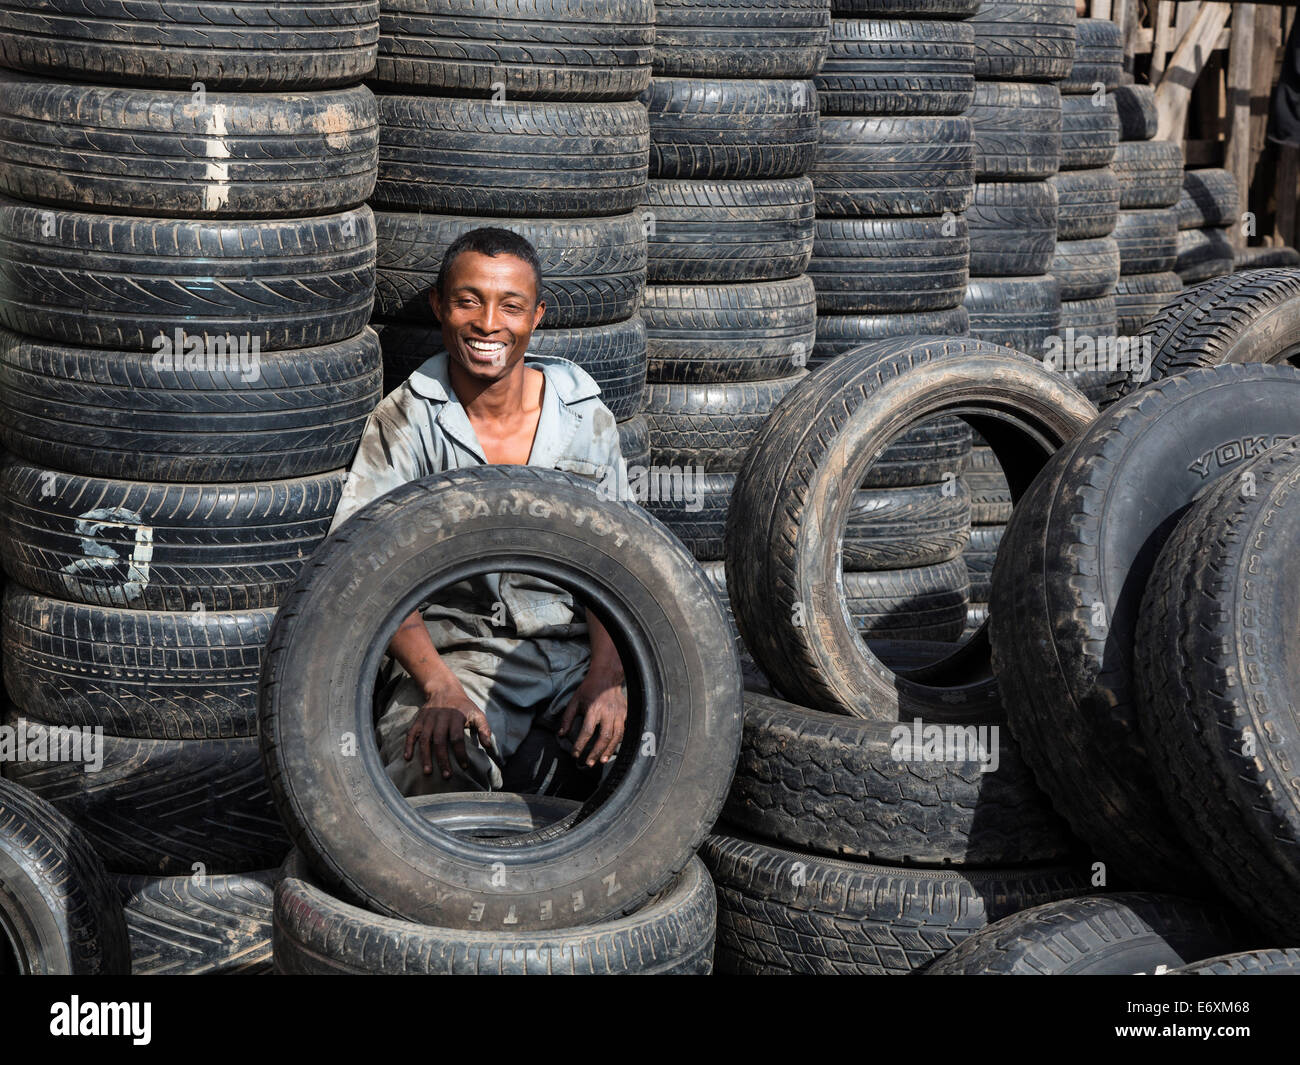 Vente de pneus, Antananarivo, capitale de Madagascar, Afrique Banque D'Images